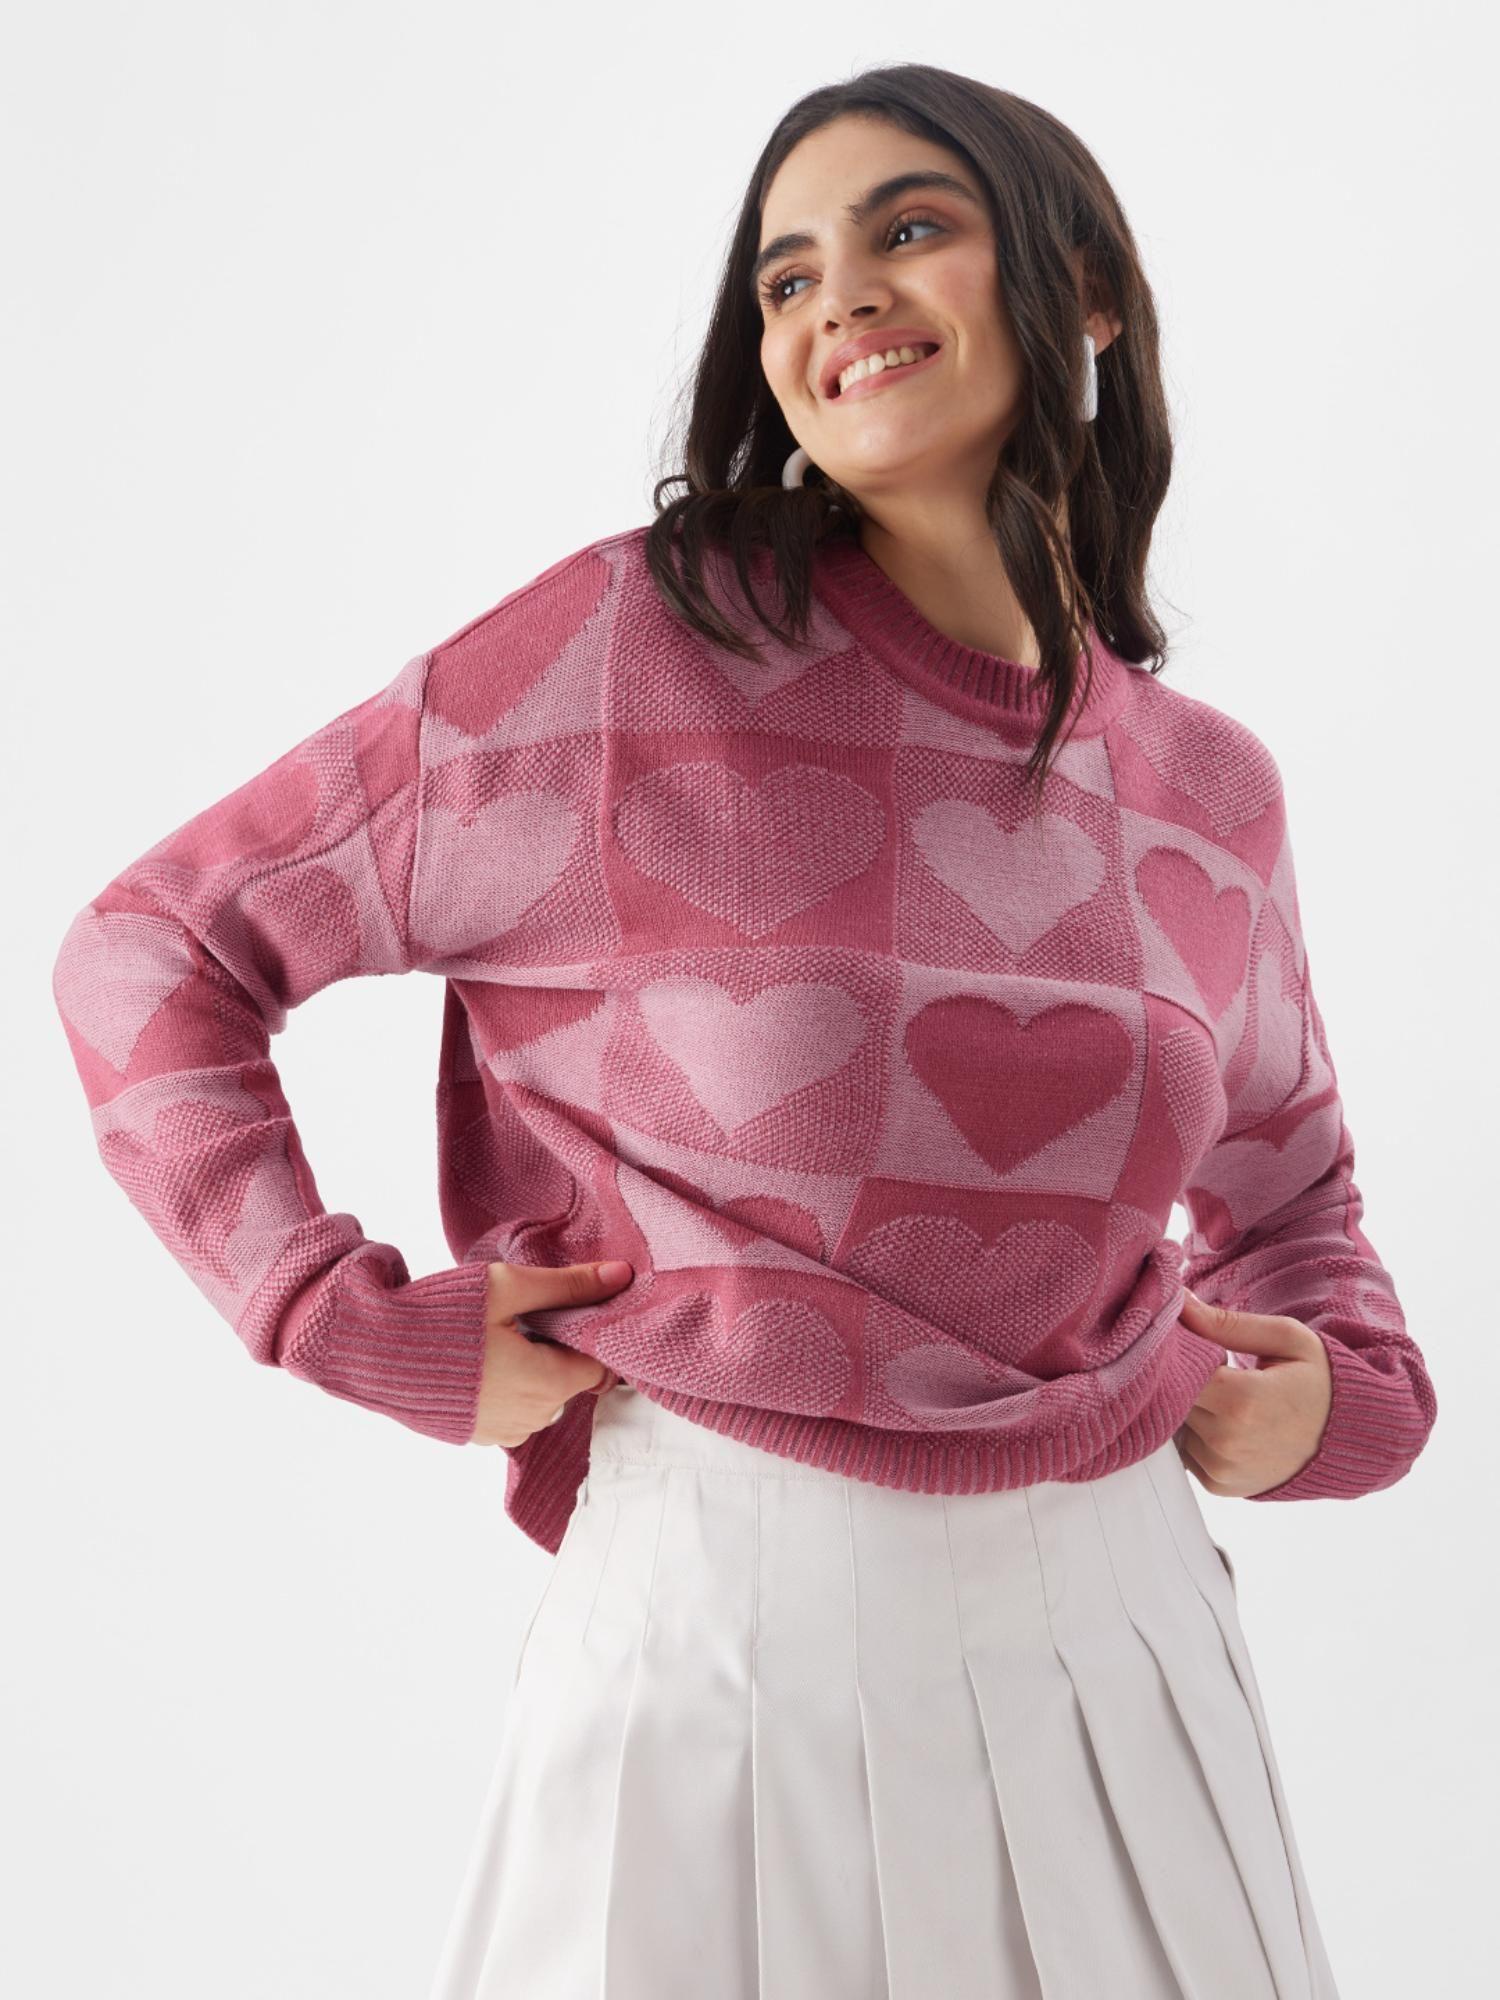 original love struck women knitted sweater